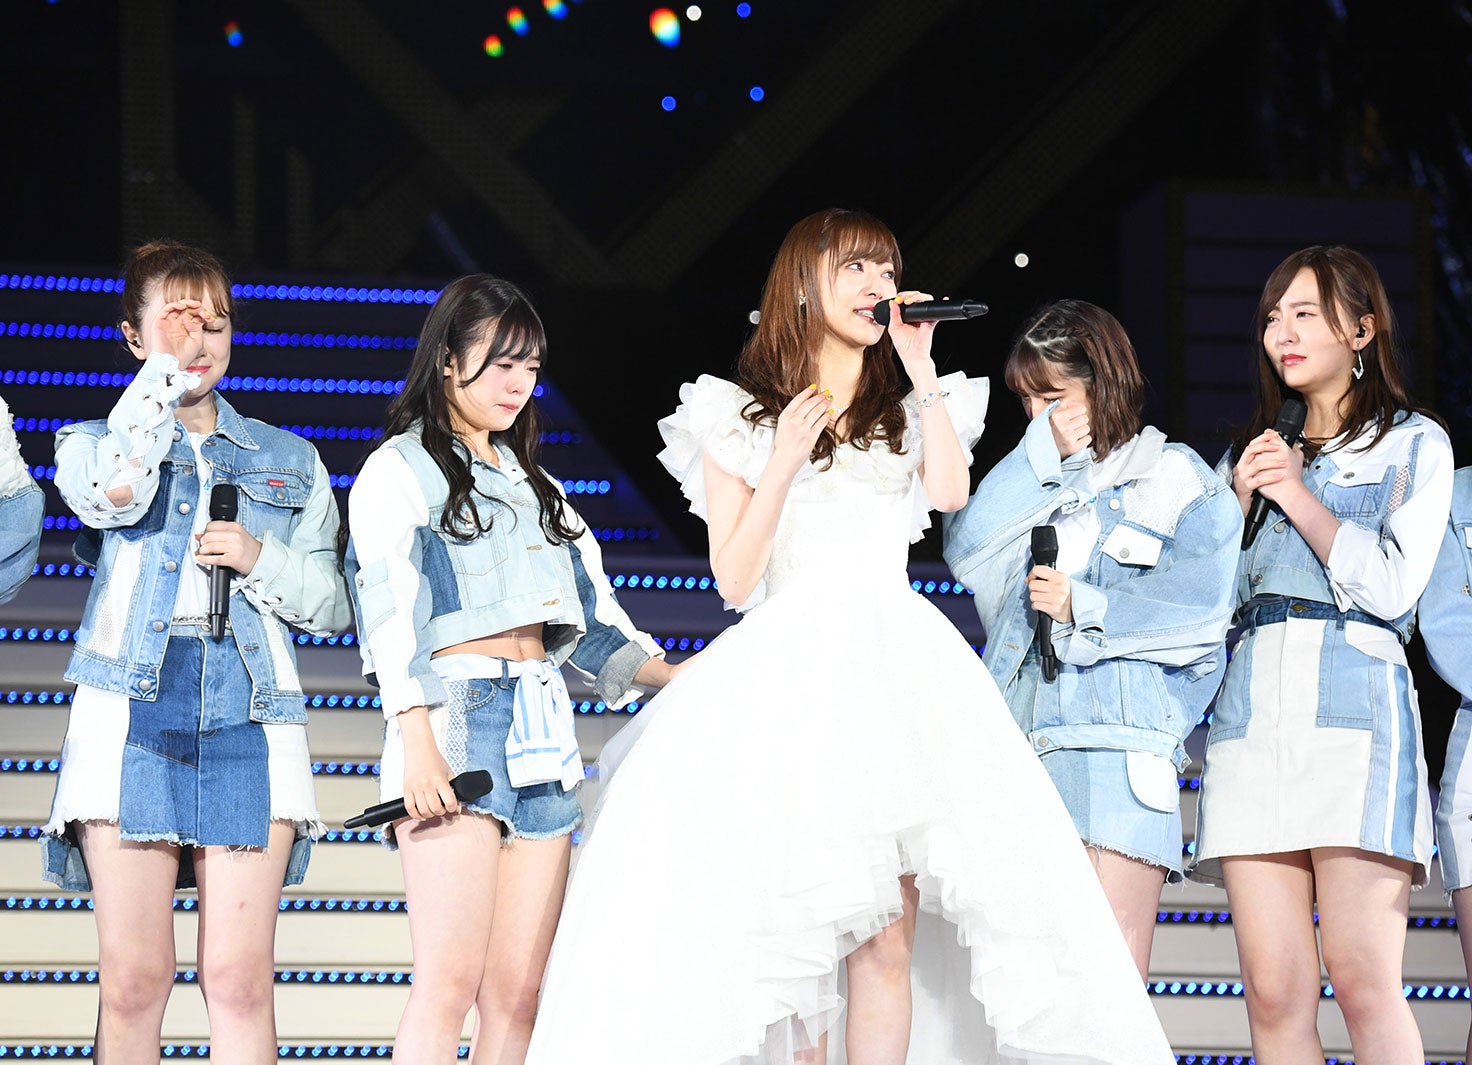 指原莉乃 卒業コンサート さよなら〈2枚組〉AKB48 HKT48 - ミュージック